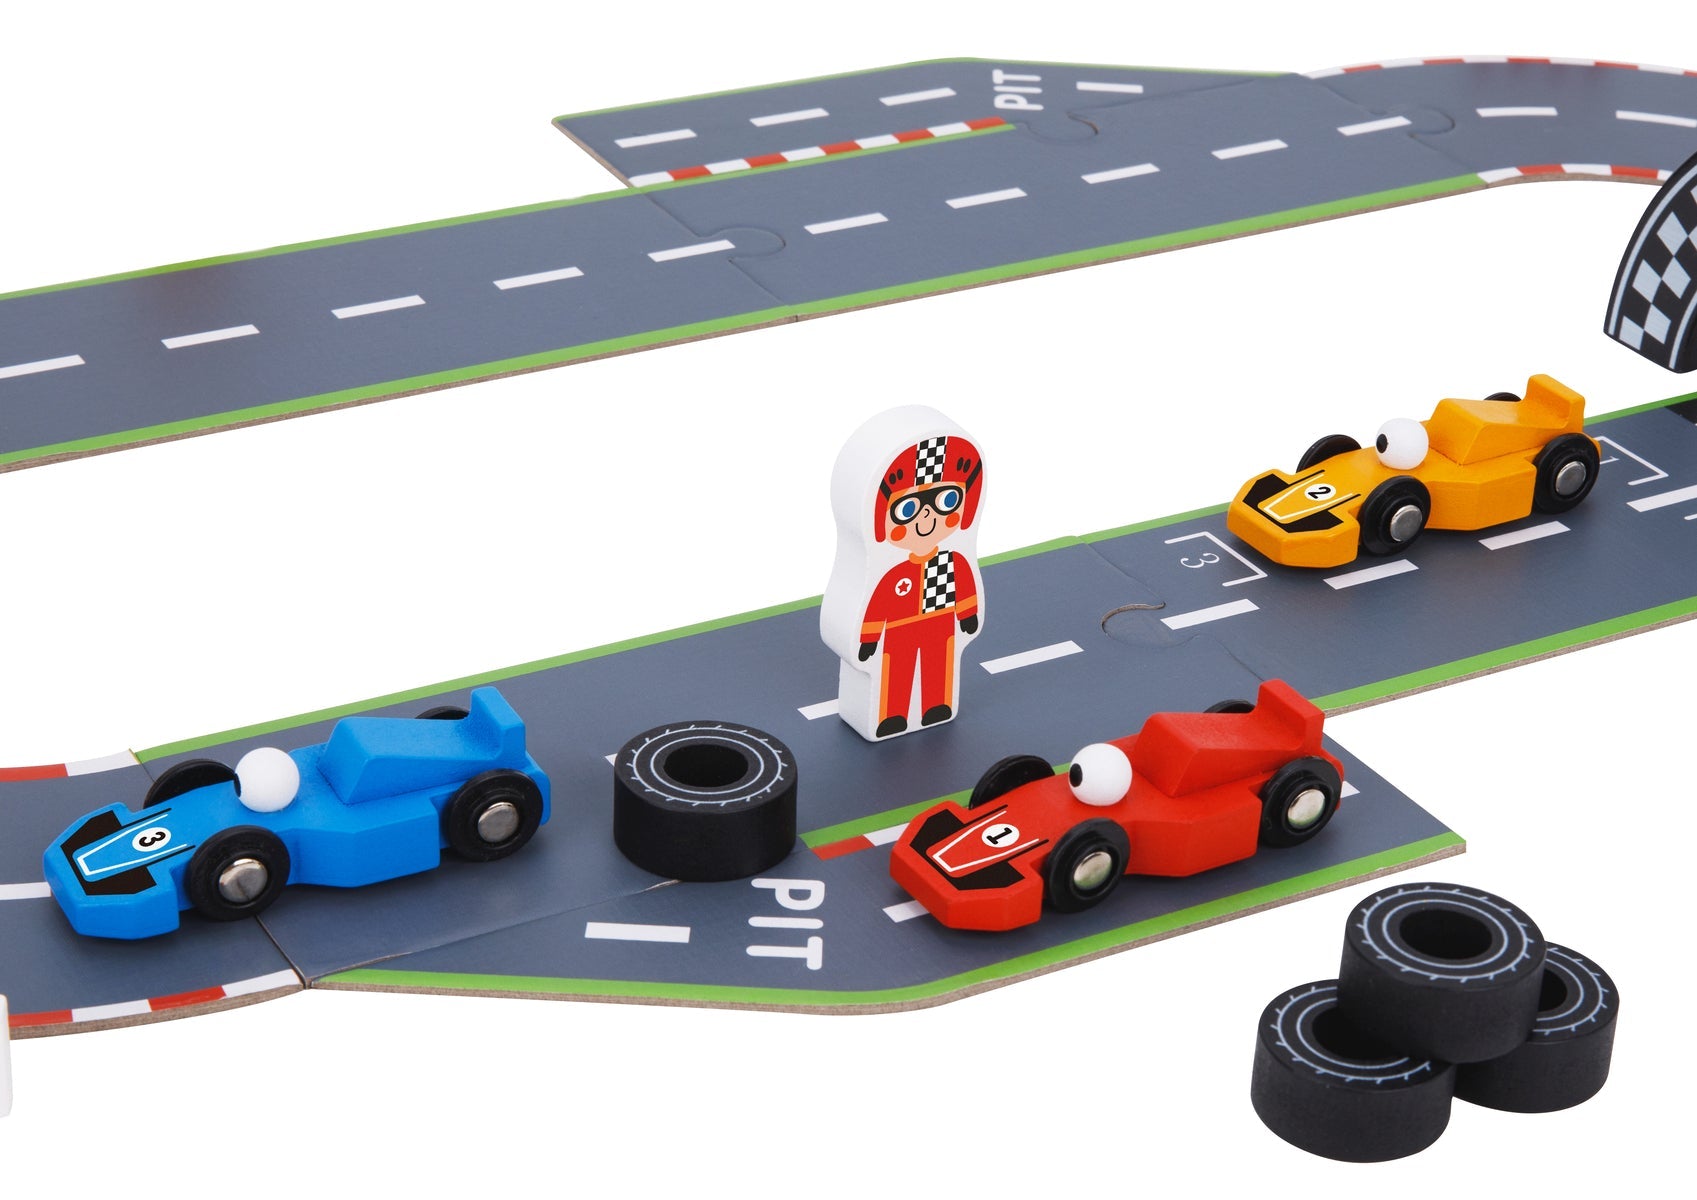 Build & Race Puzzle Playmat for Children